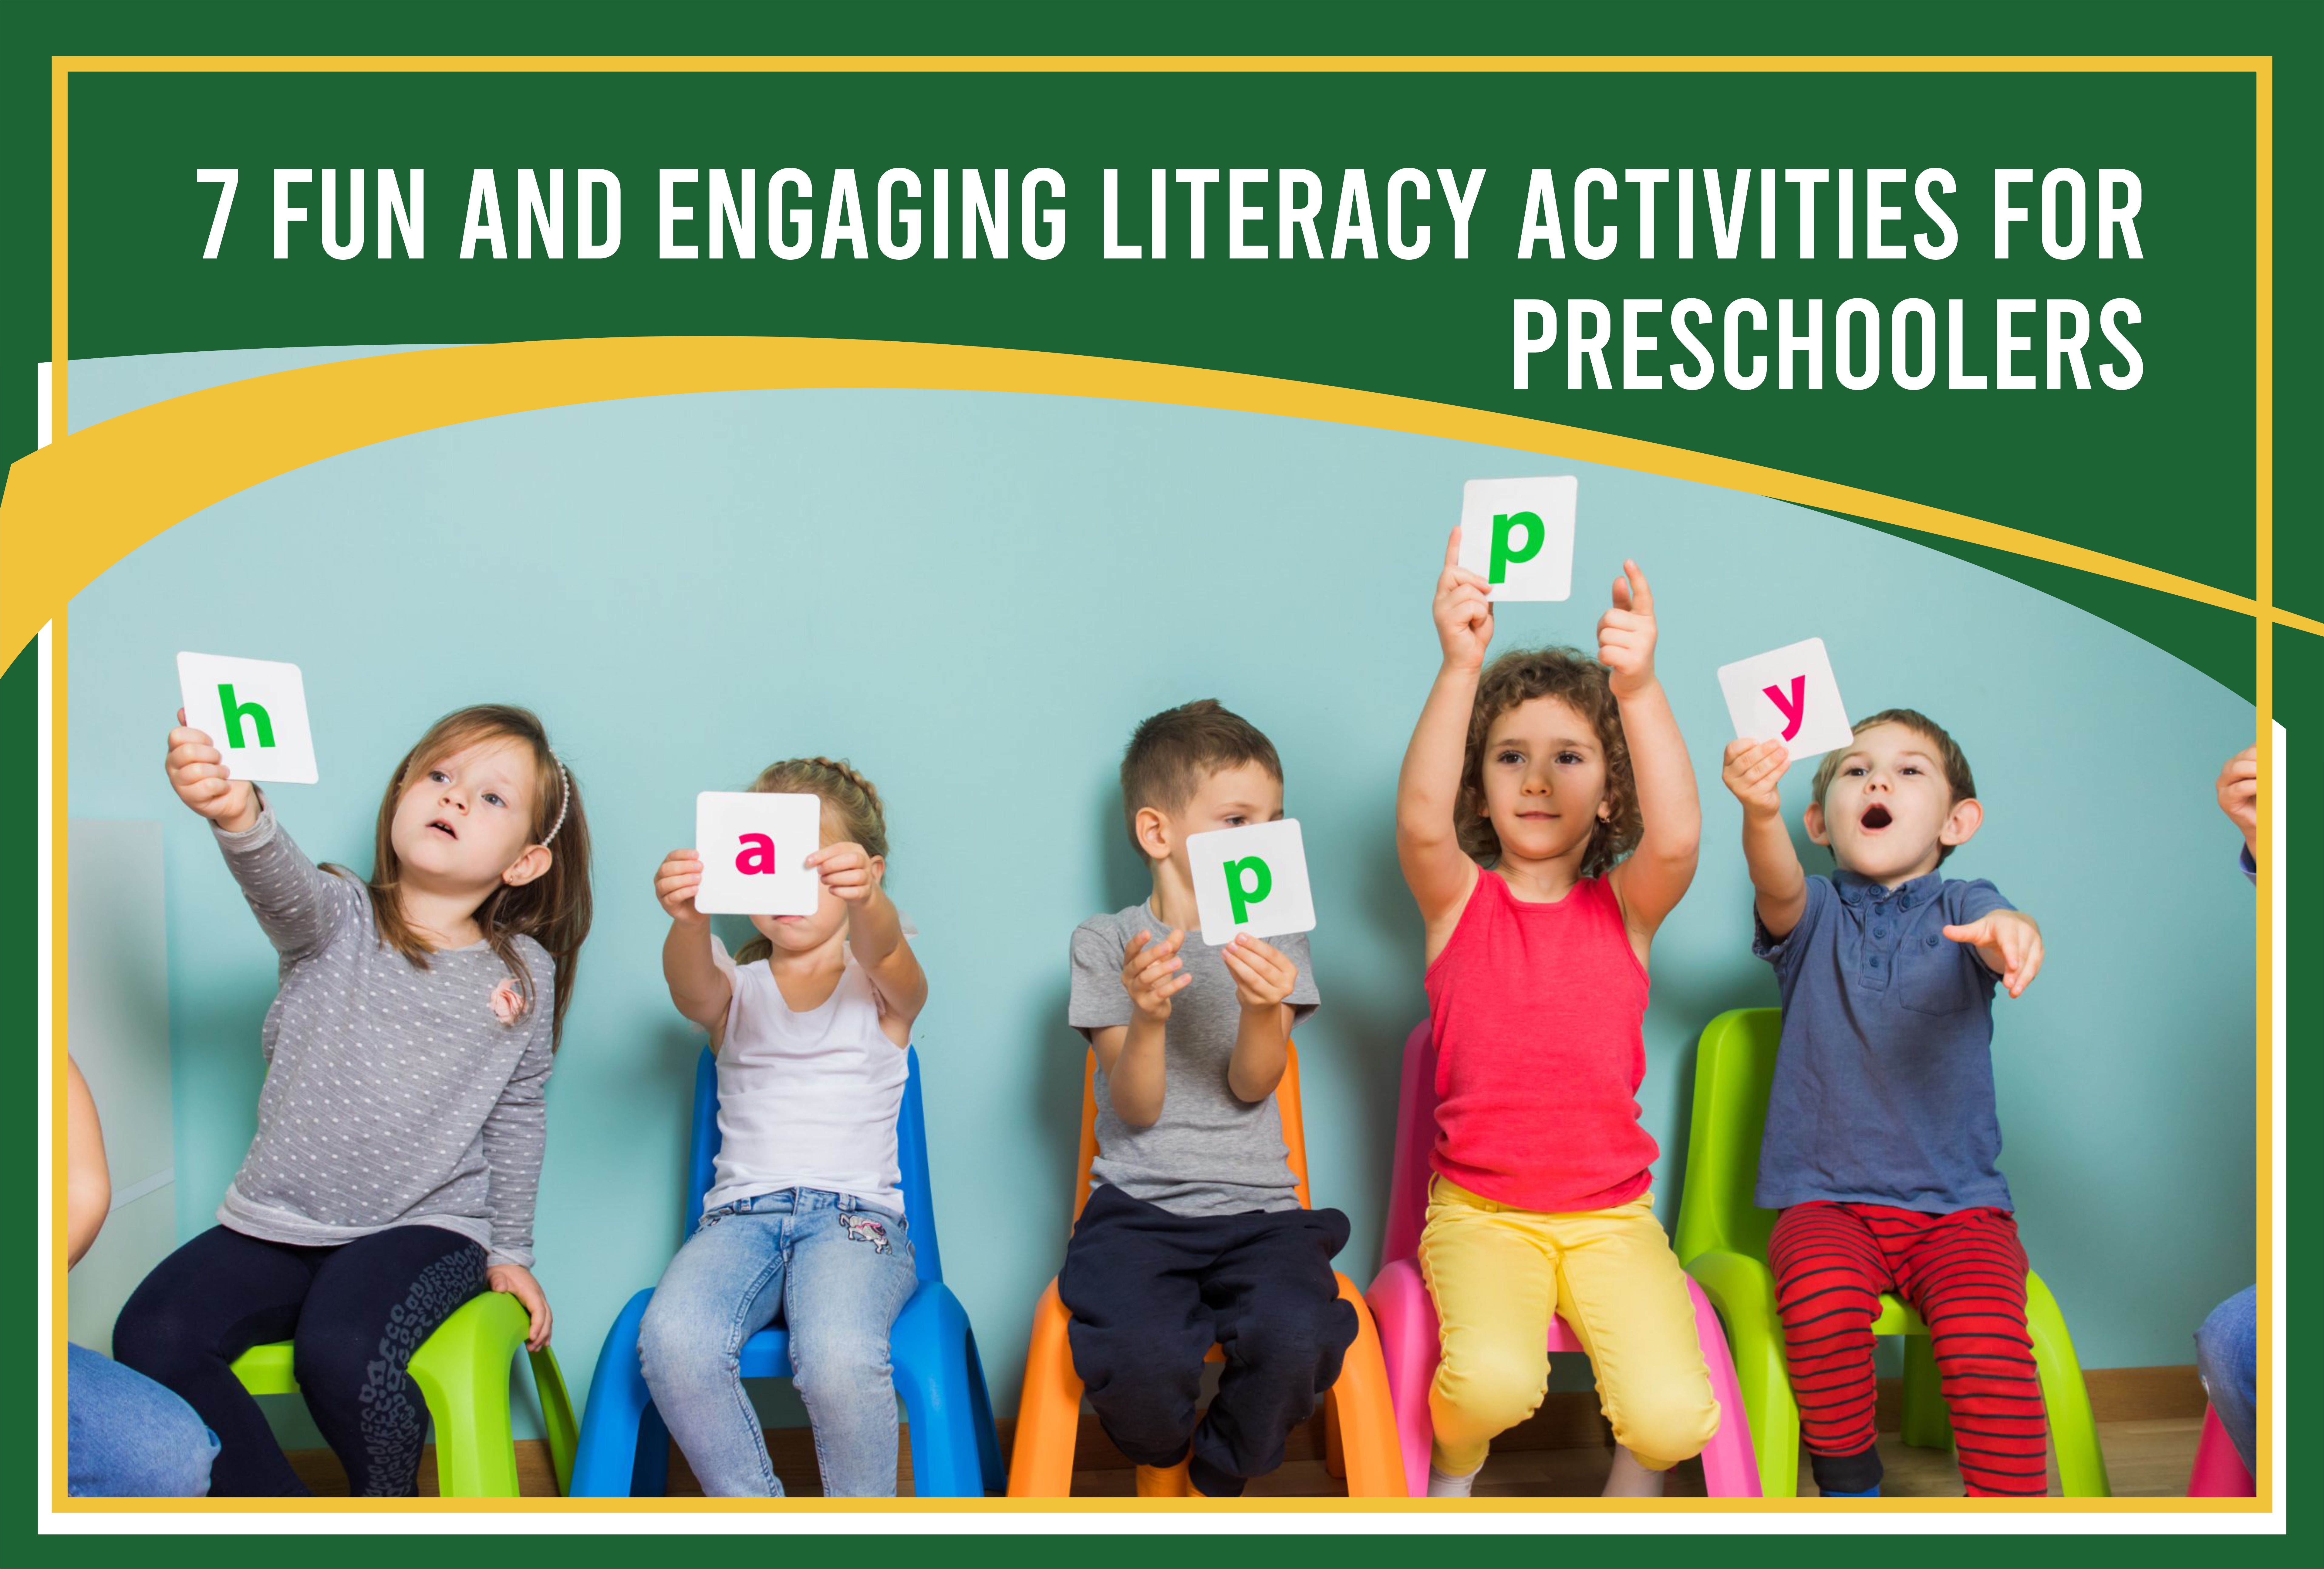 Engaging Literacy Activities for Preschoolers